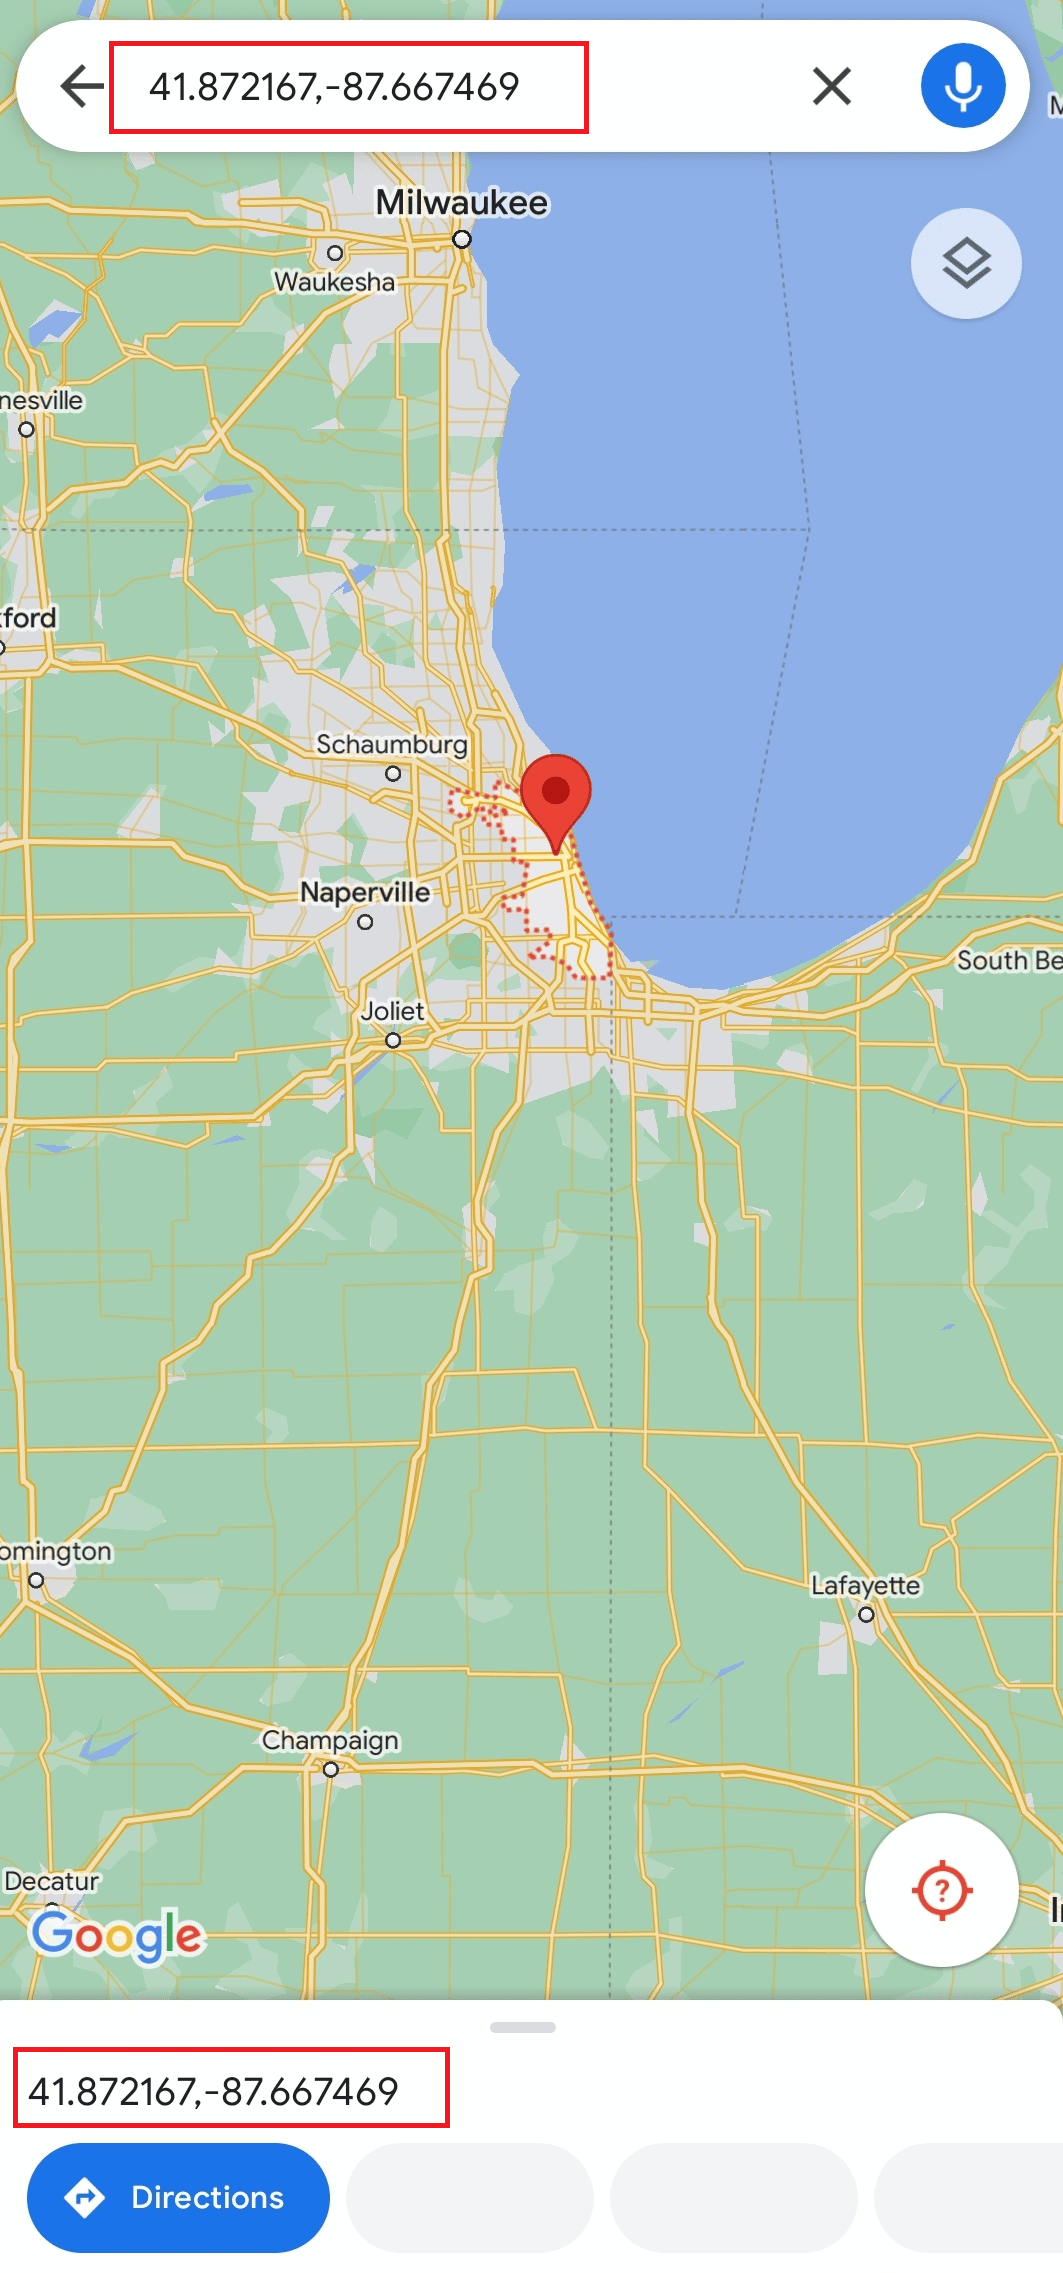 Trova Chicago e premi a lungo la posizione sullo schermo del tuo cellulare per ottenere le coordinate (41.87216, - 87.66746)